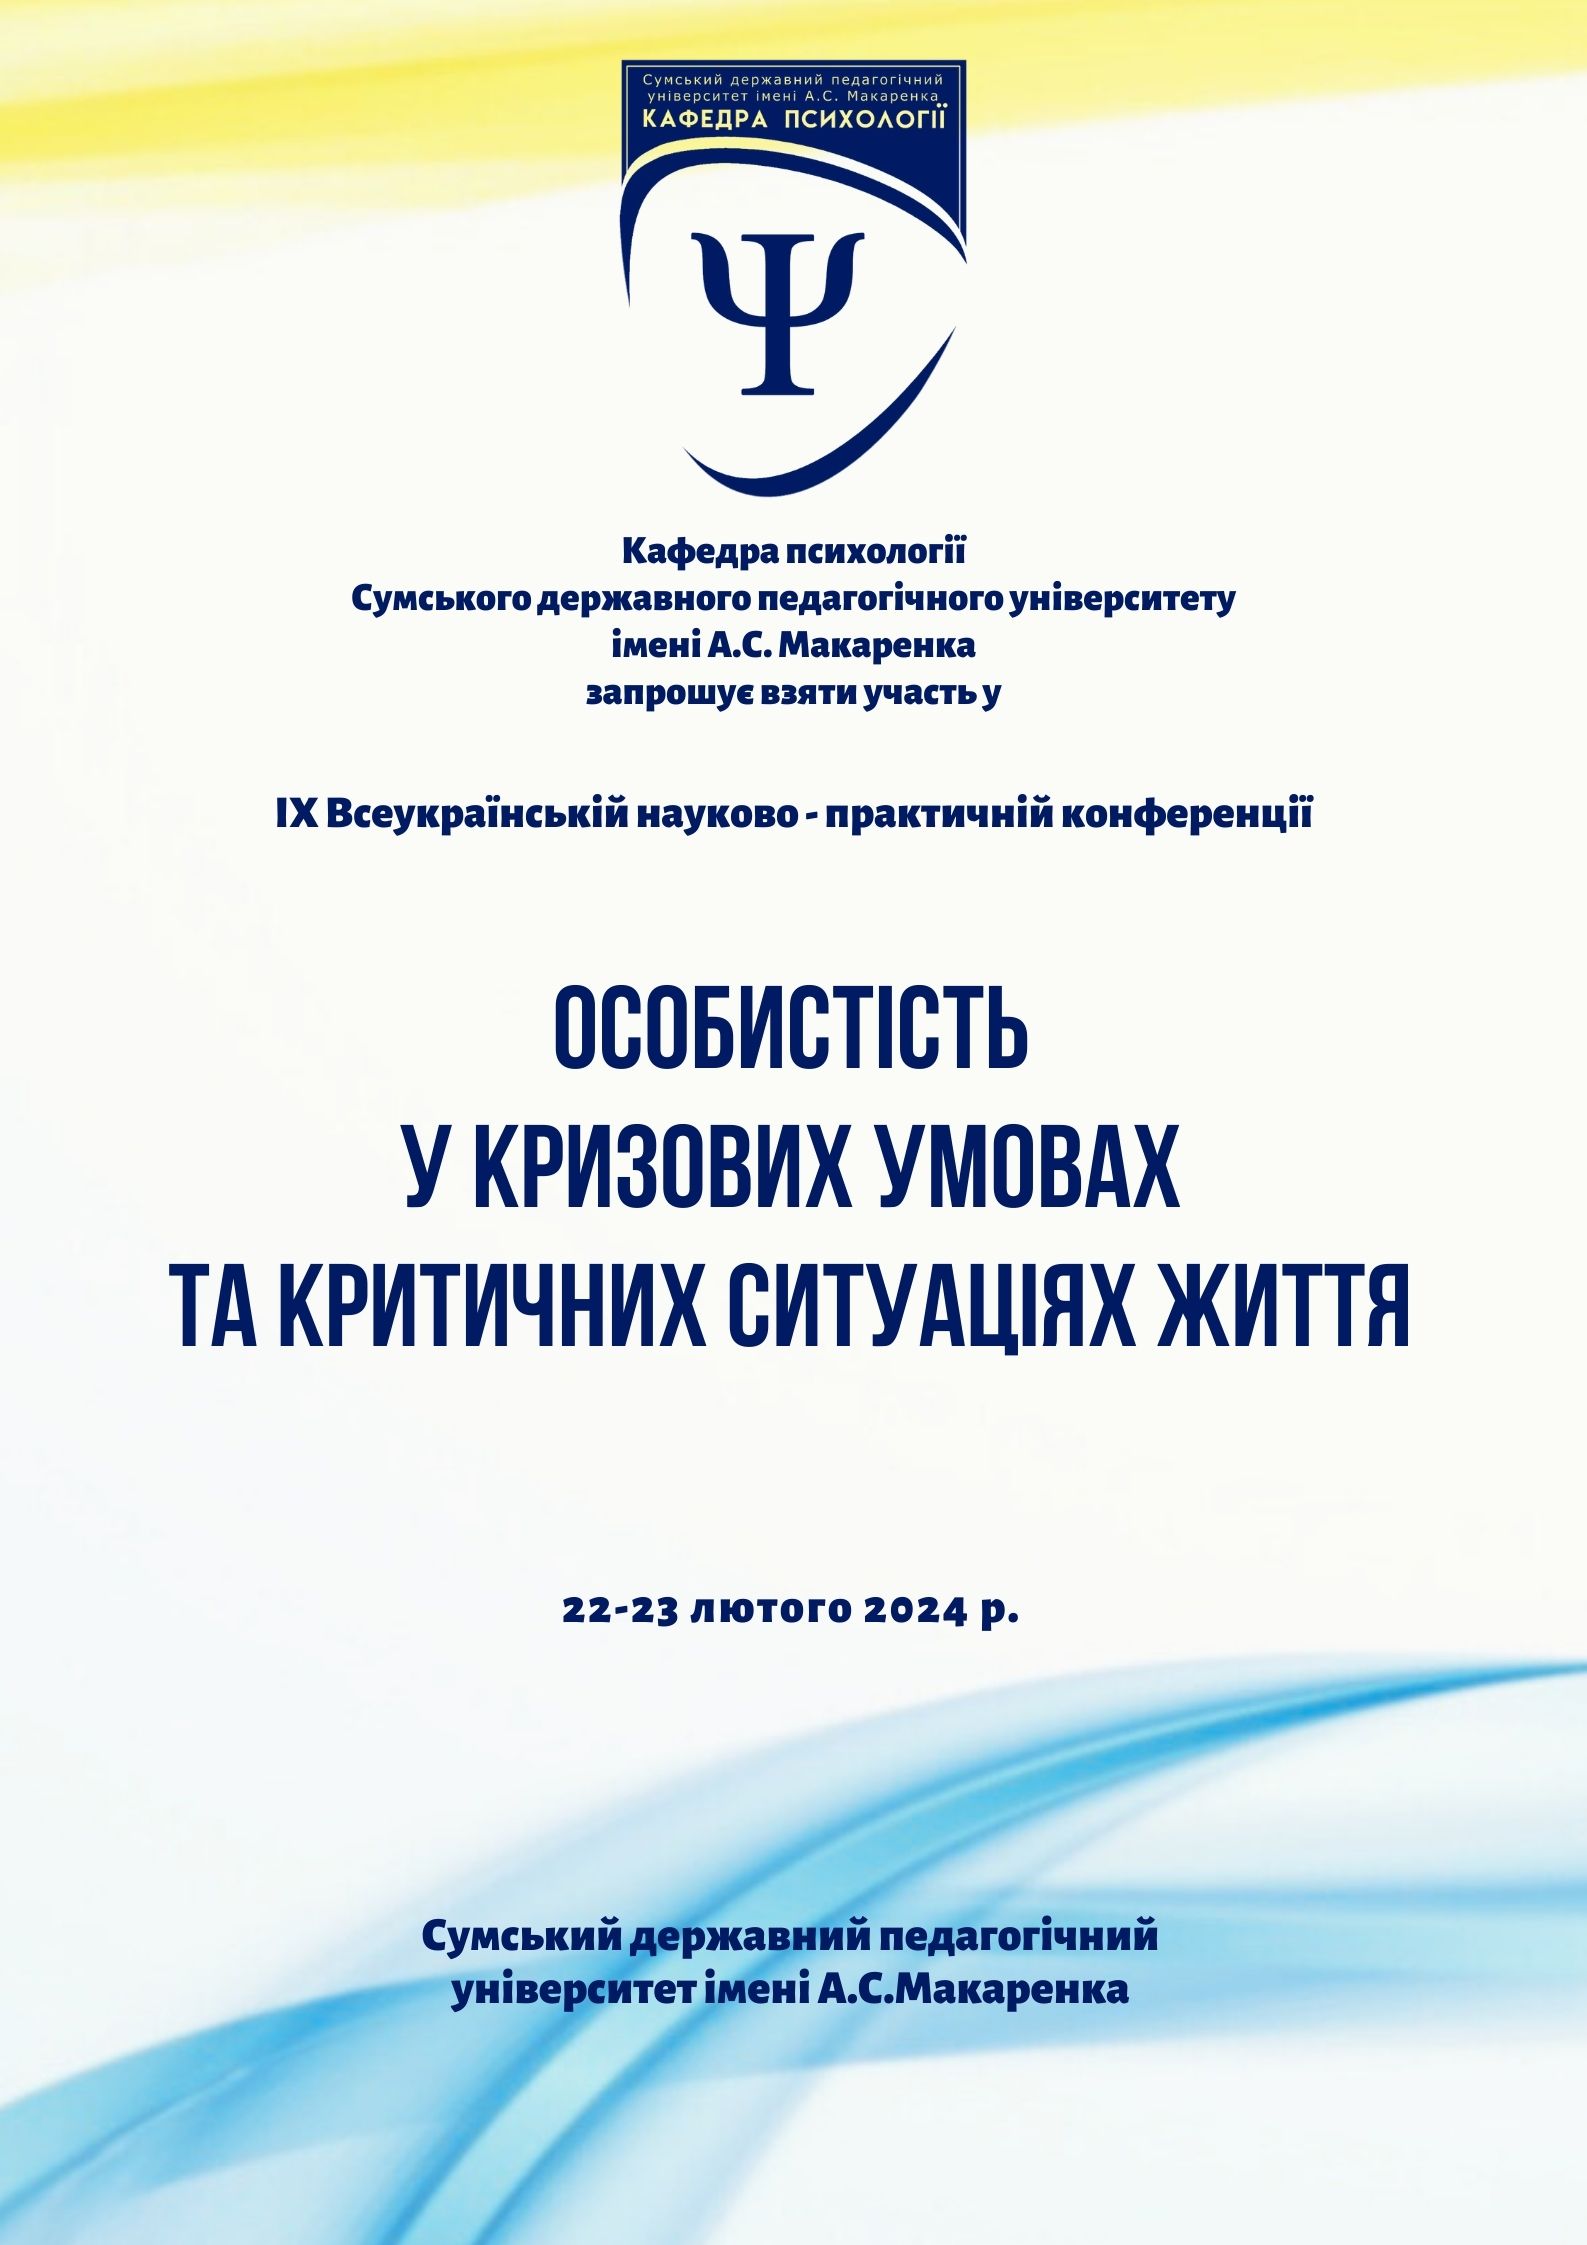 IX Всеукраїнська науково-практична конференція «Особистість у кризових умовах та критичних ситуаціях життя»